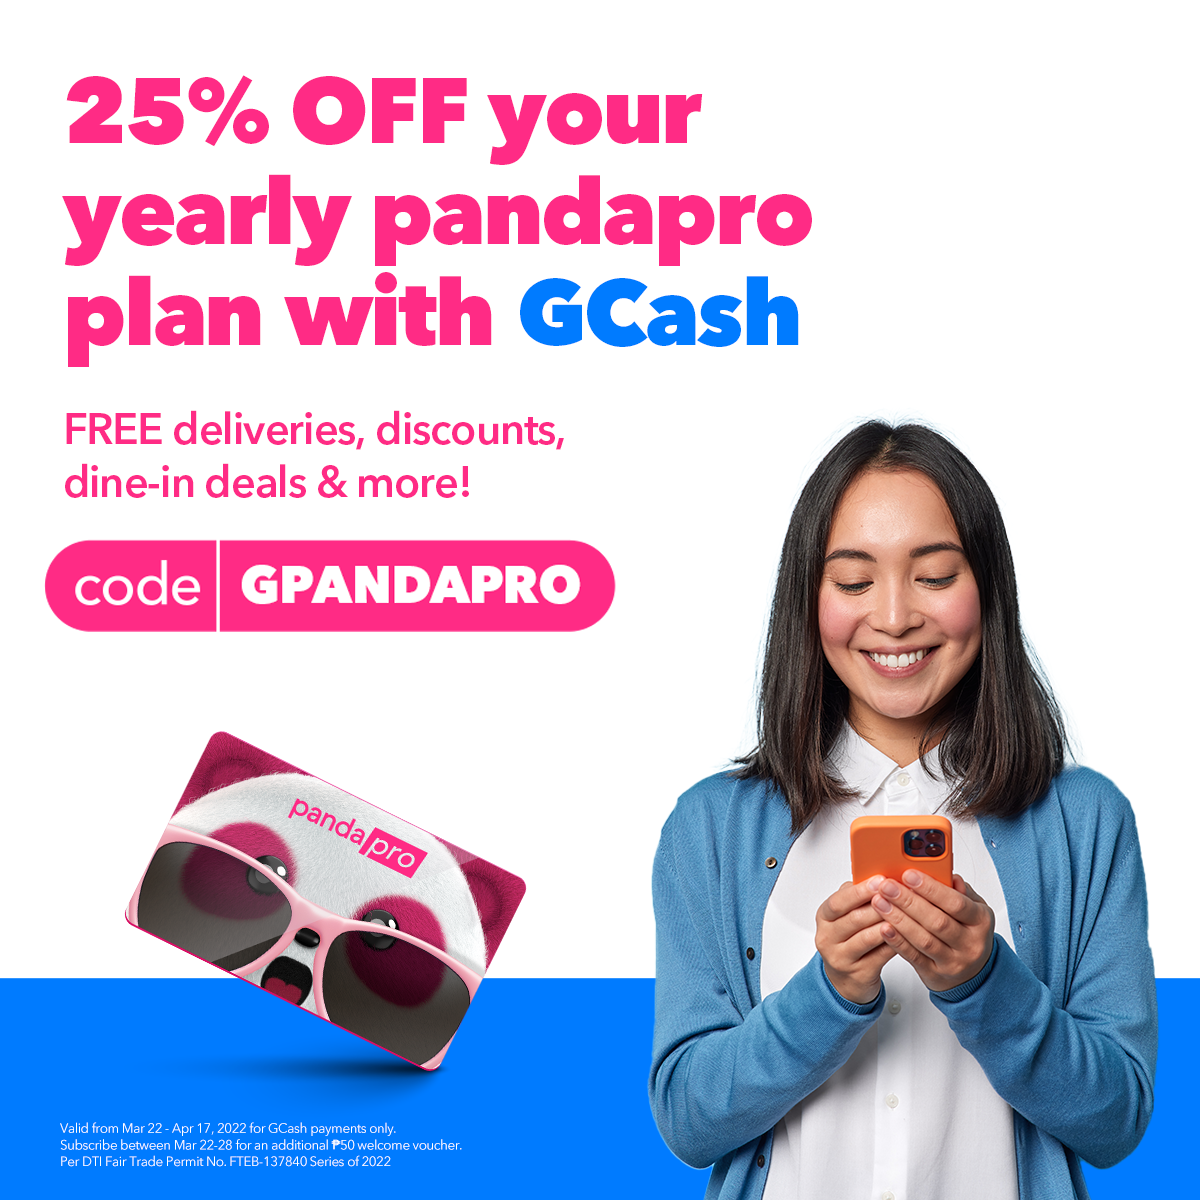 Food panda promo code 2022